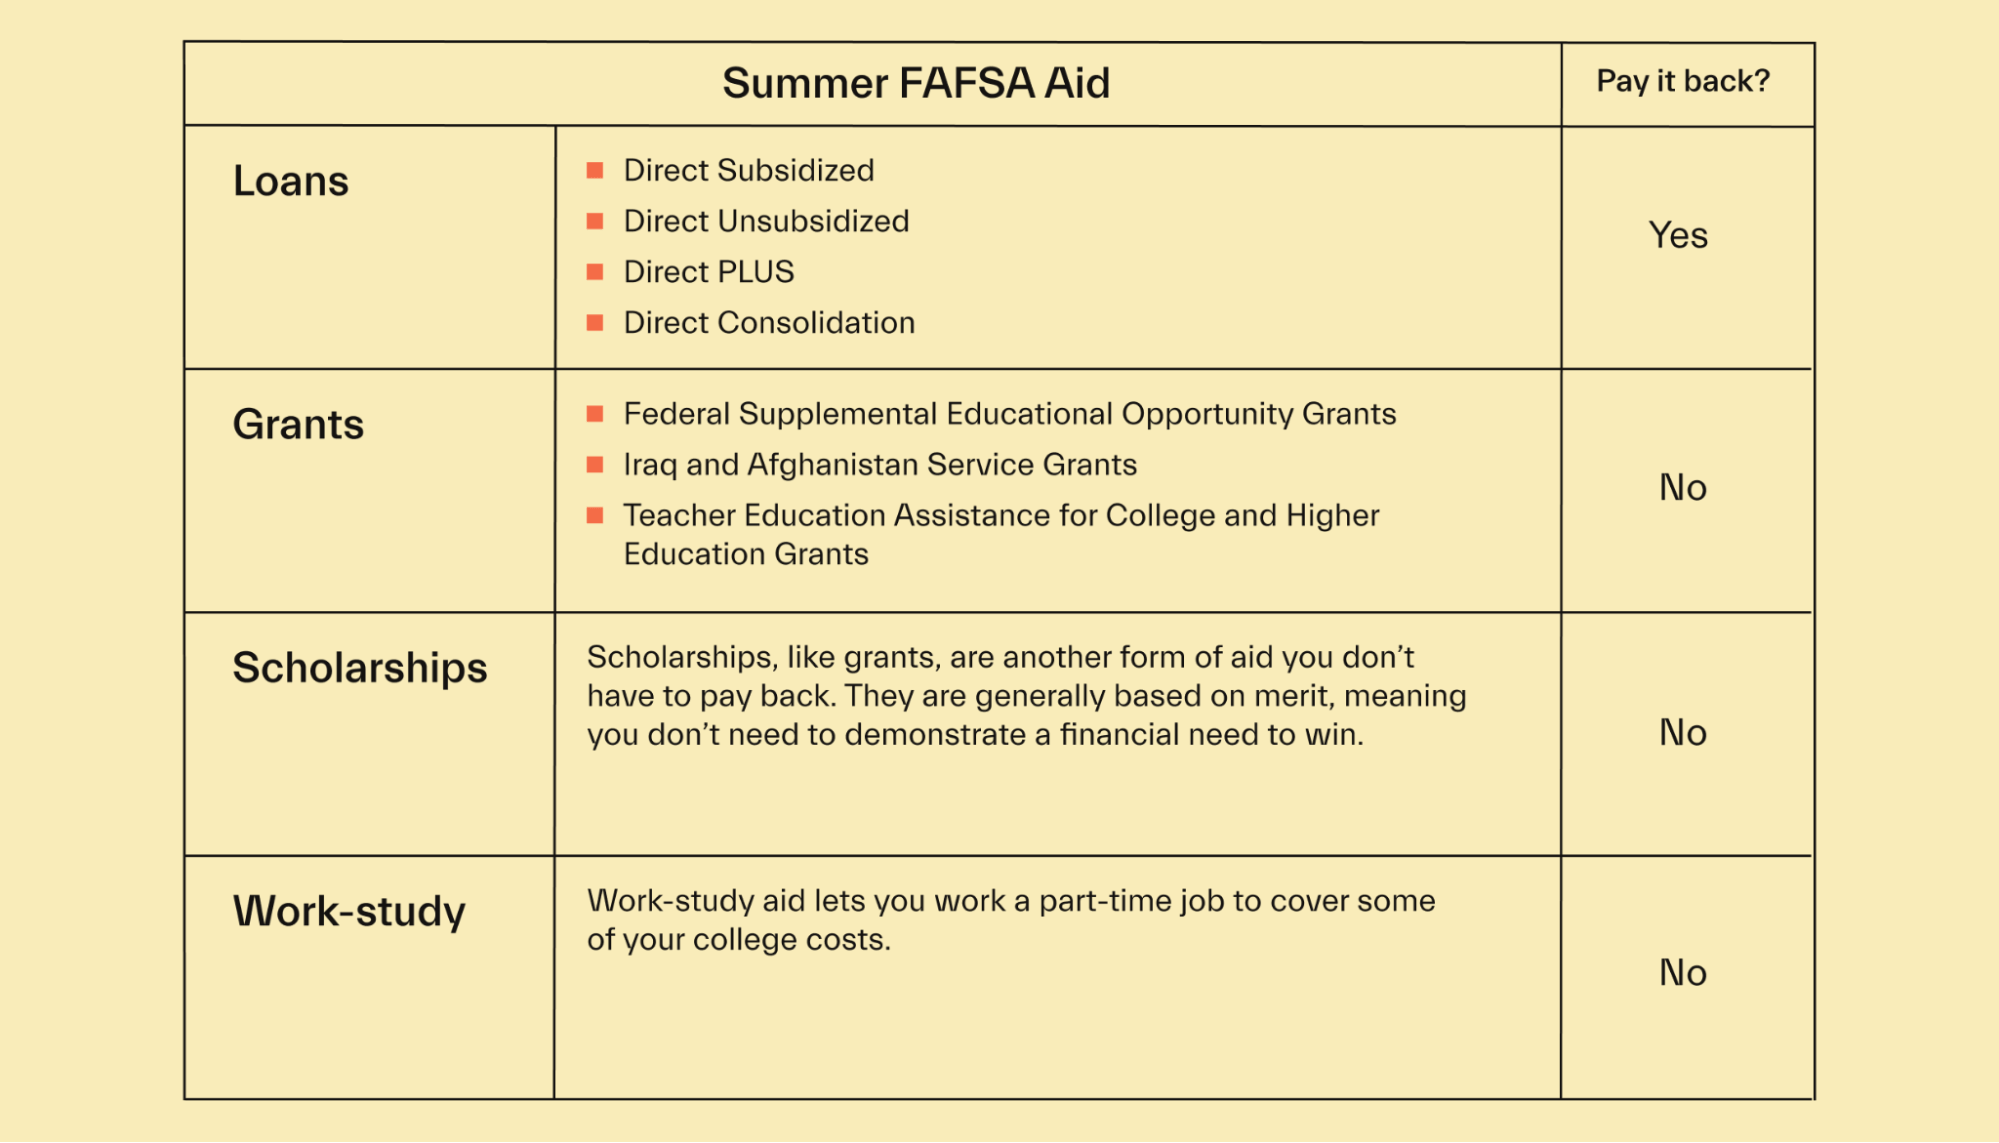 Summer FAFSA Aid